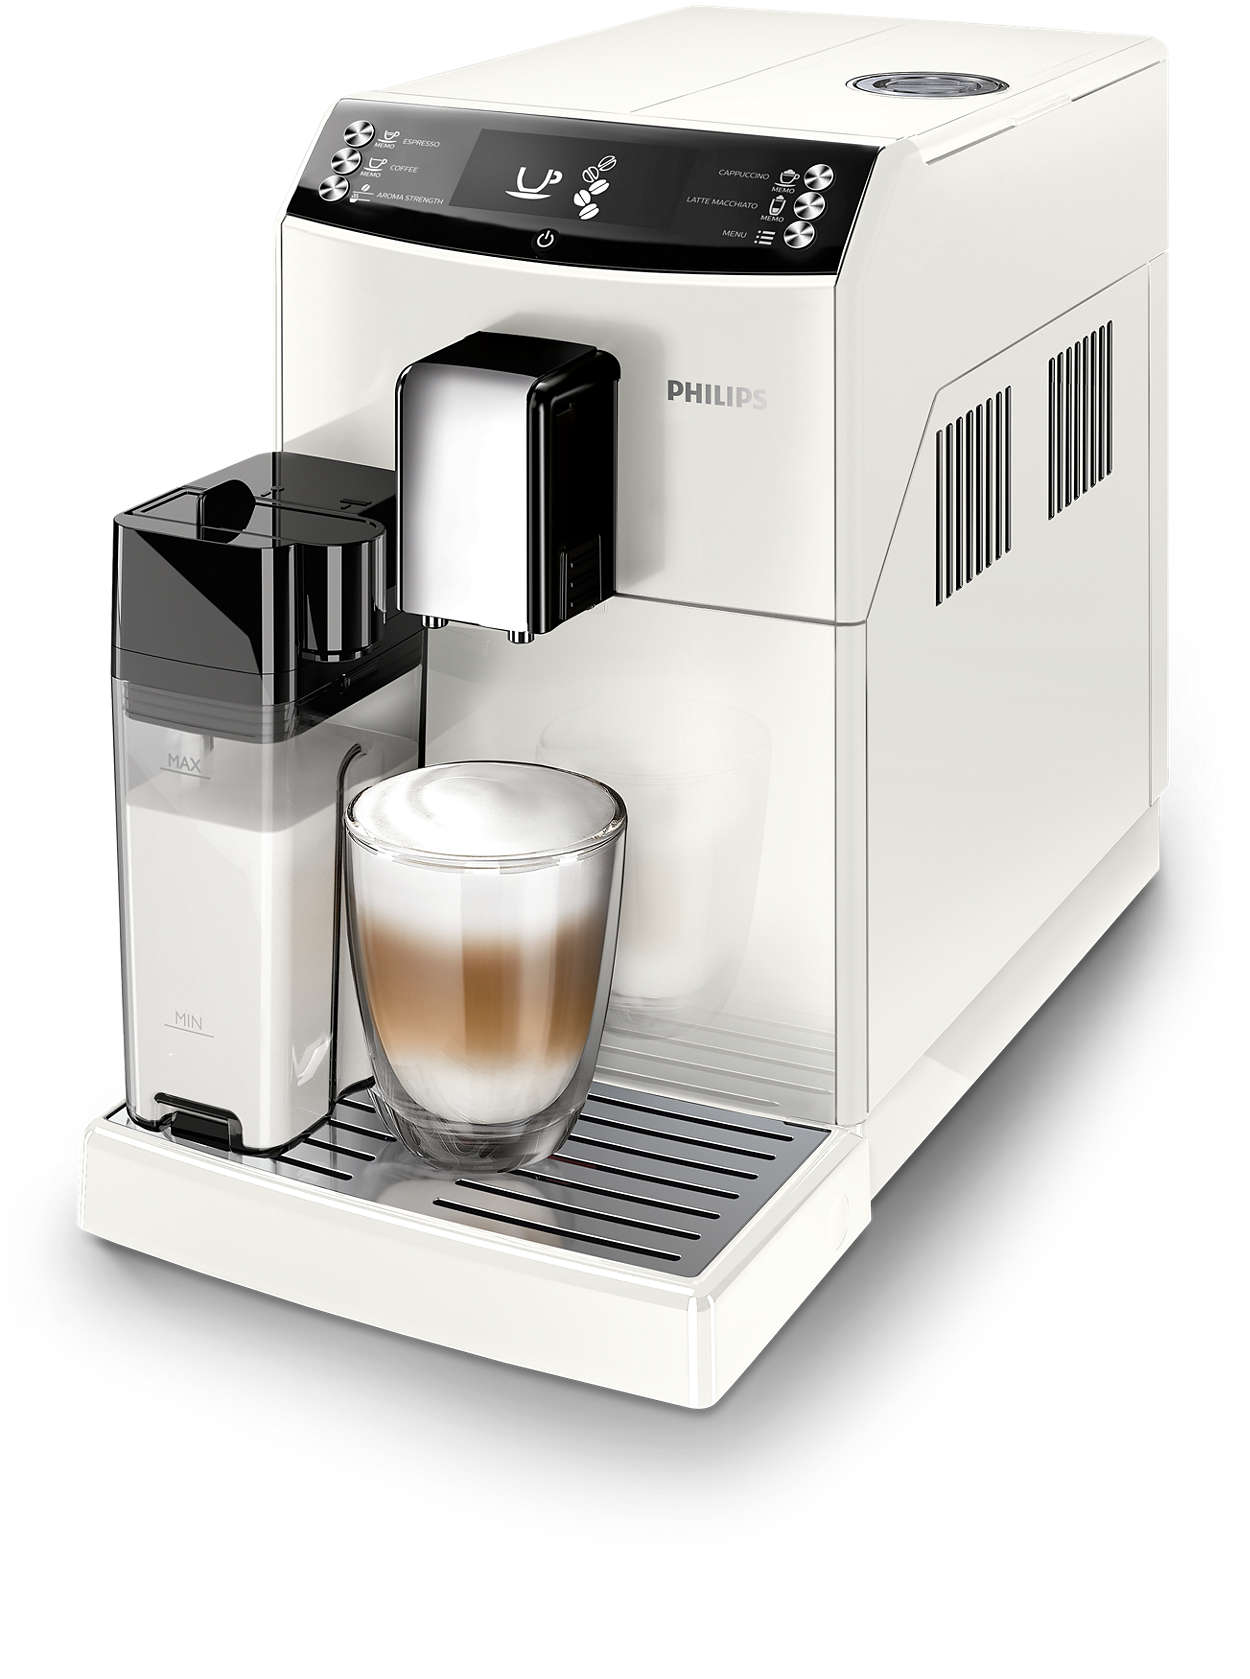 Pyszne espresso i cappuccino za jednym naciśnięciem przycisku